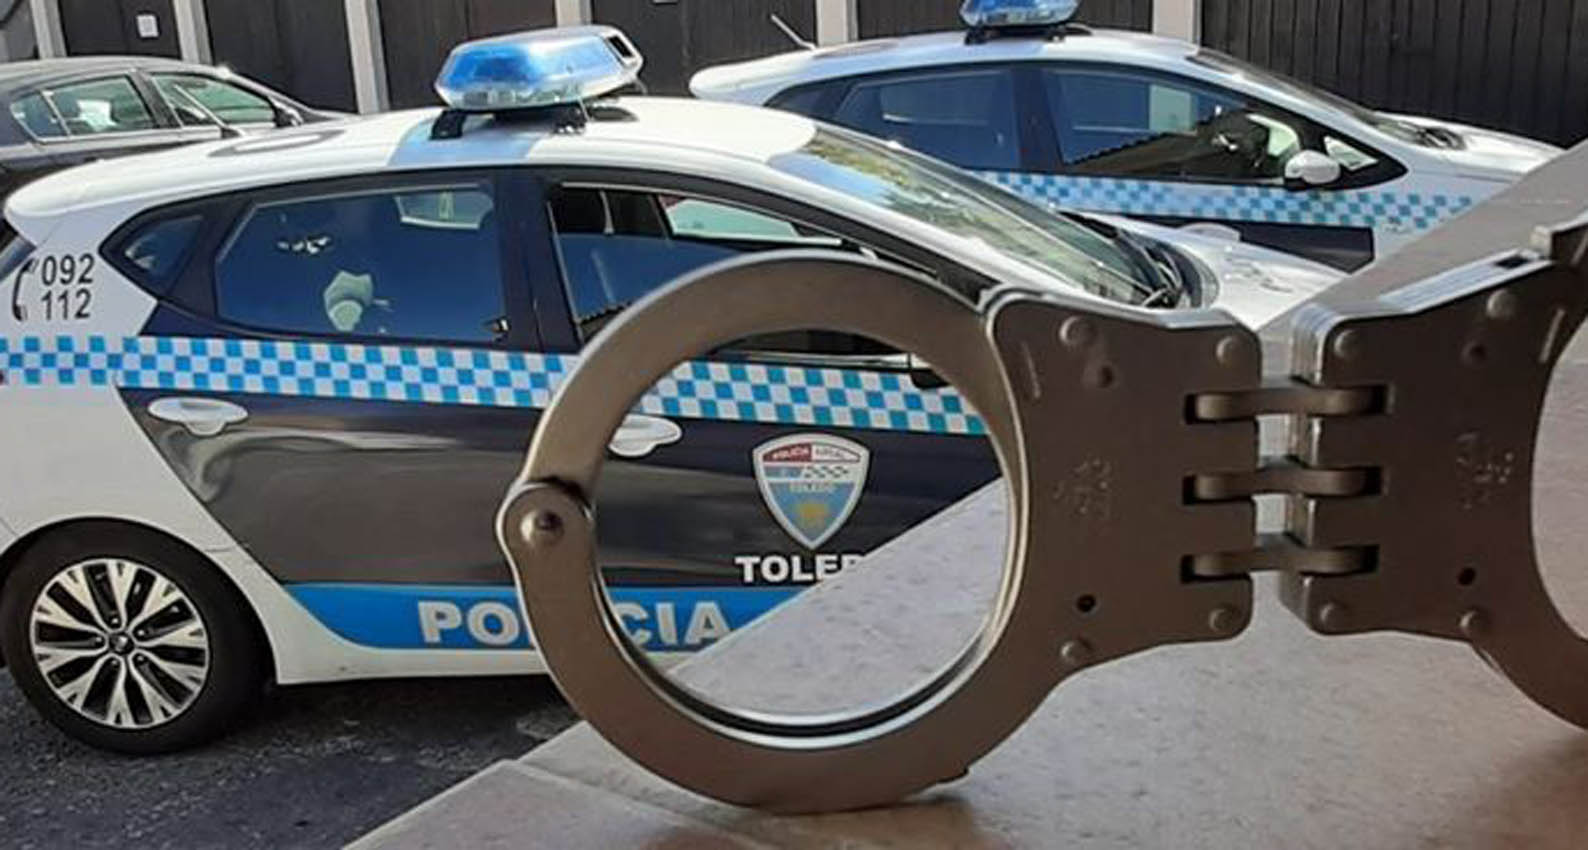 Foto: Policía Local de Toledo. santa bárbara